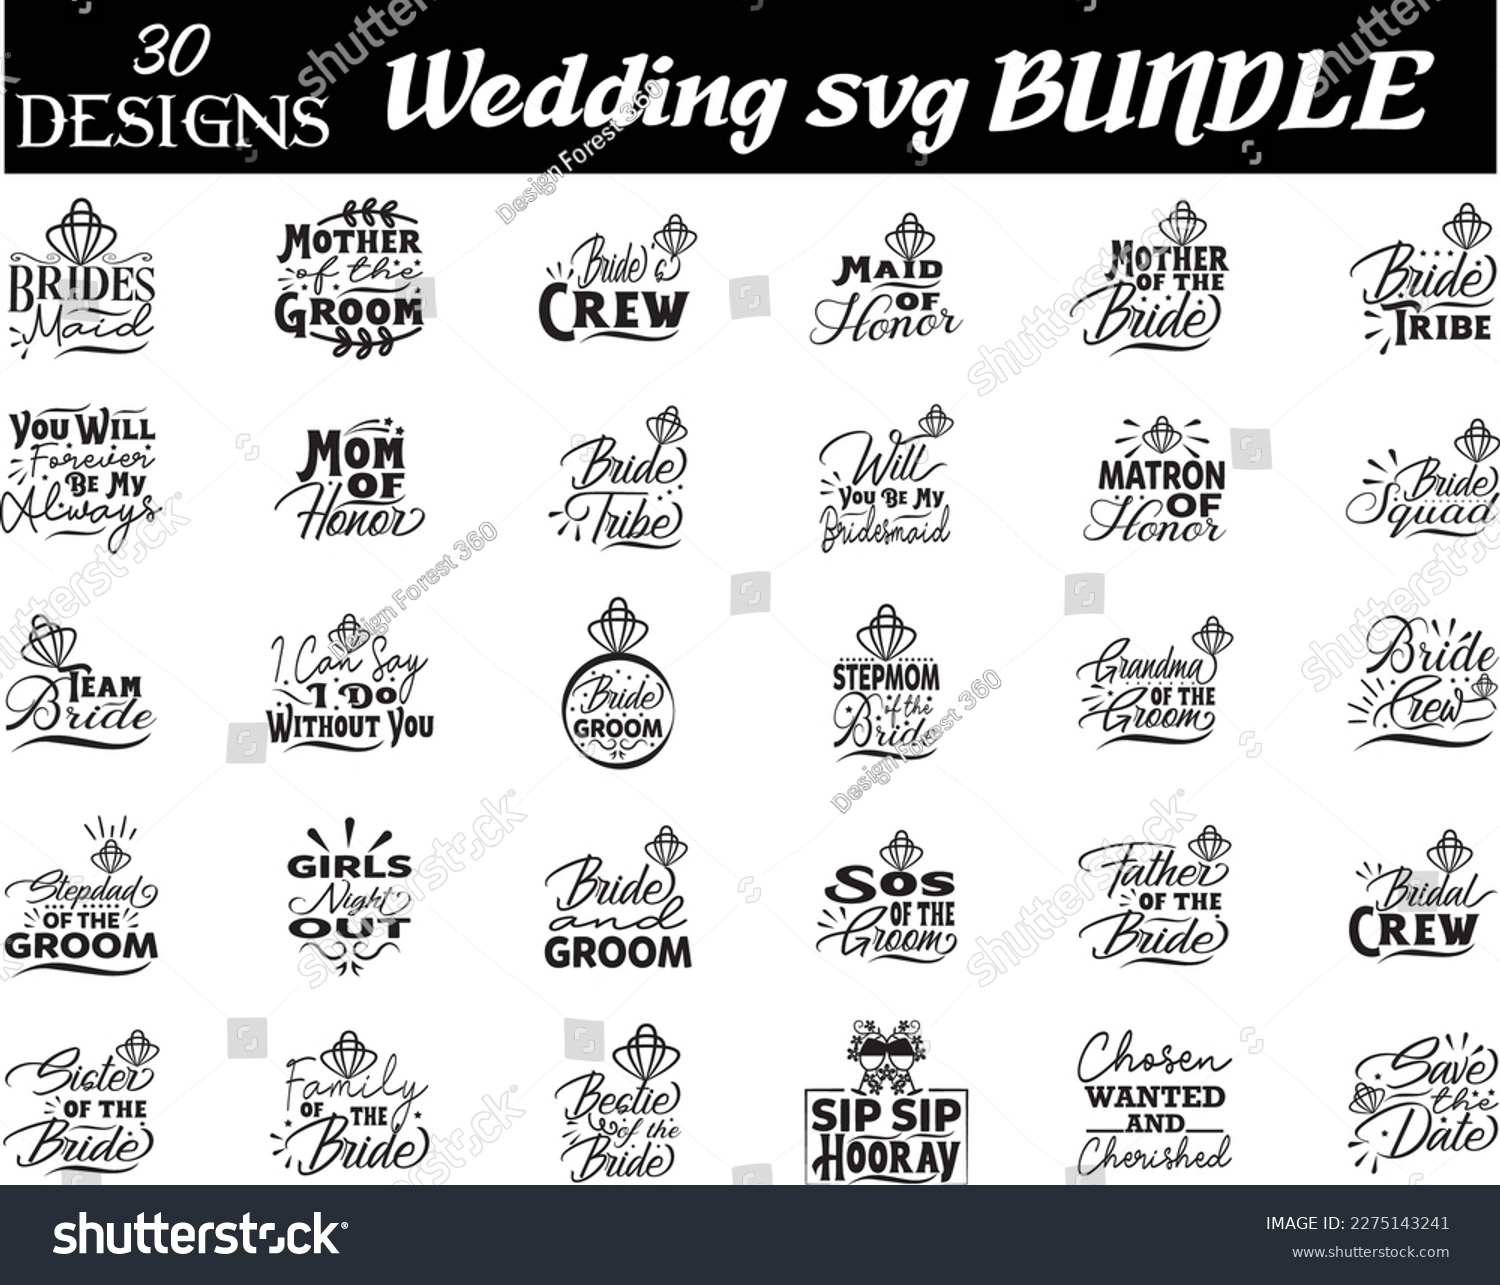 SVG of Wedding svg BUNDLE, Wedding svg SG DESIGN svg